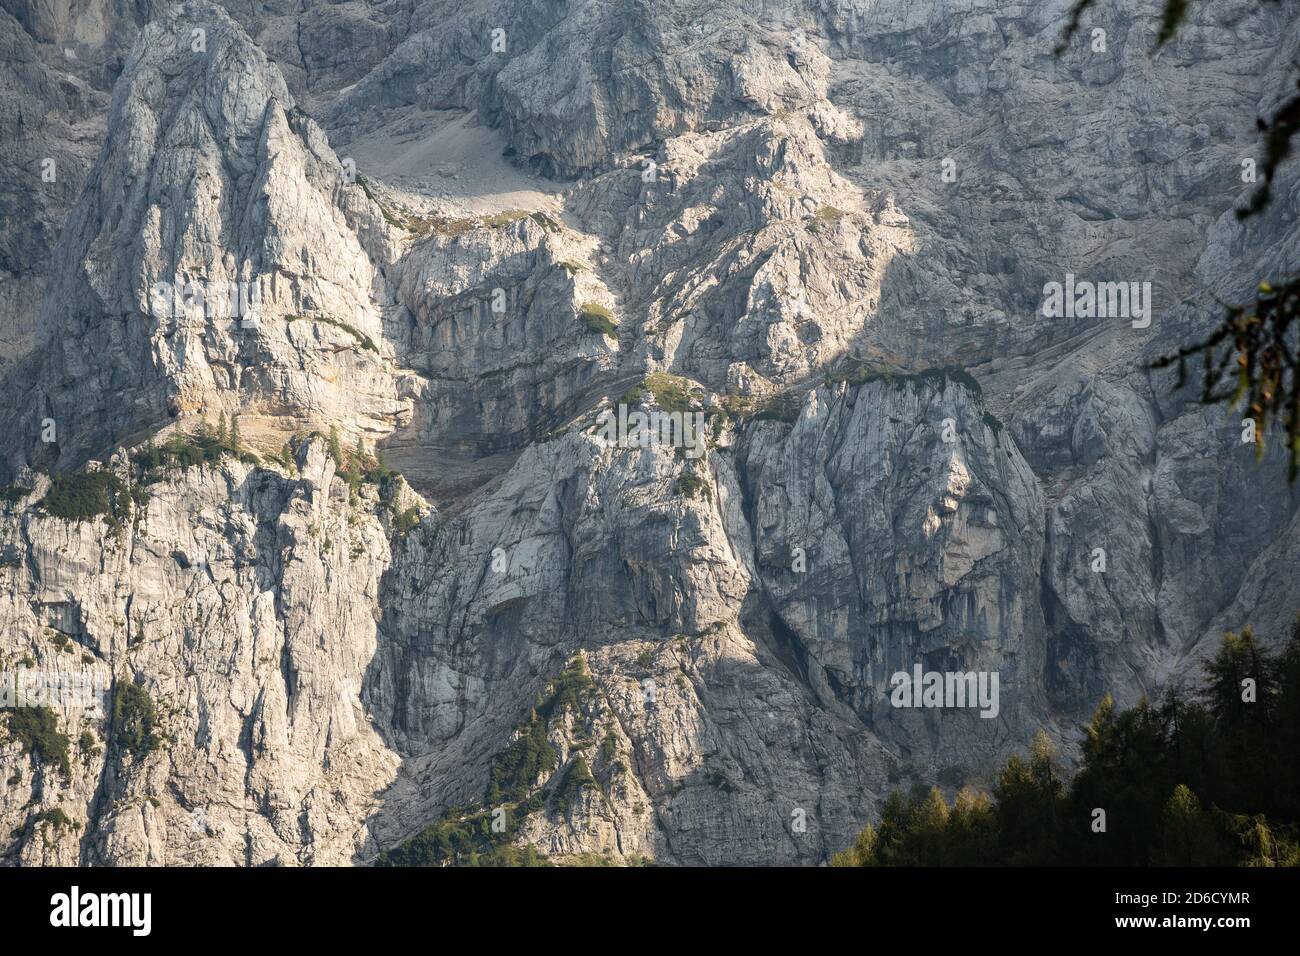 Ragazza pagana Ajdovska deklica roccia faccia in Prisank montagna, Slovenia Foto Stock